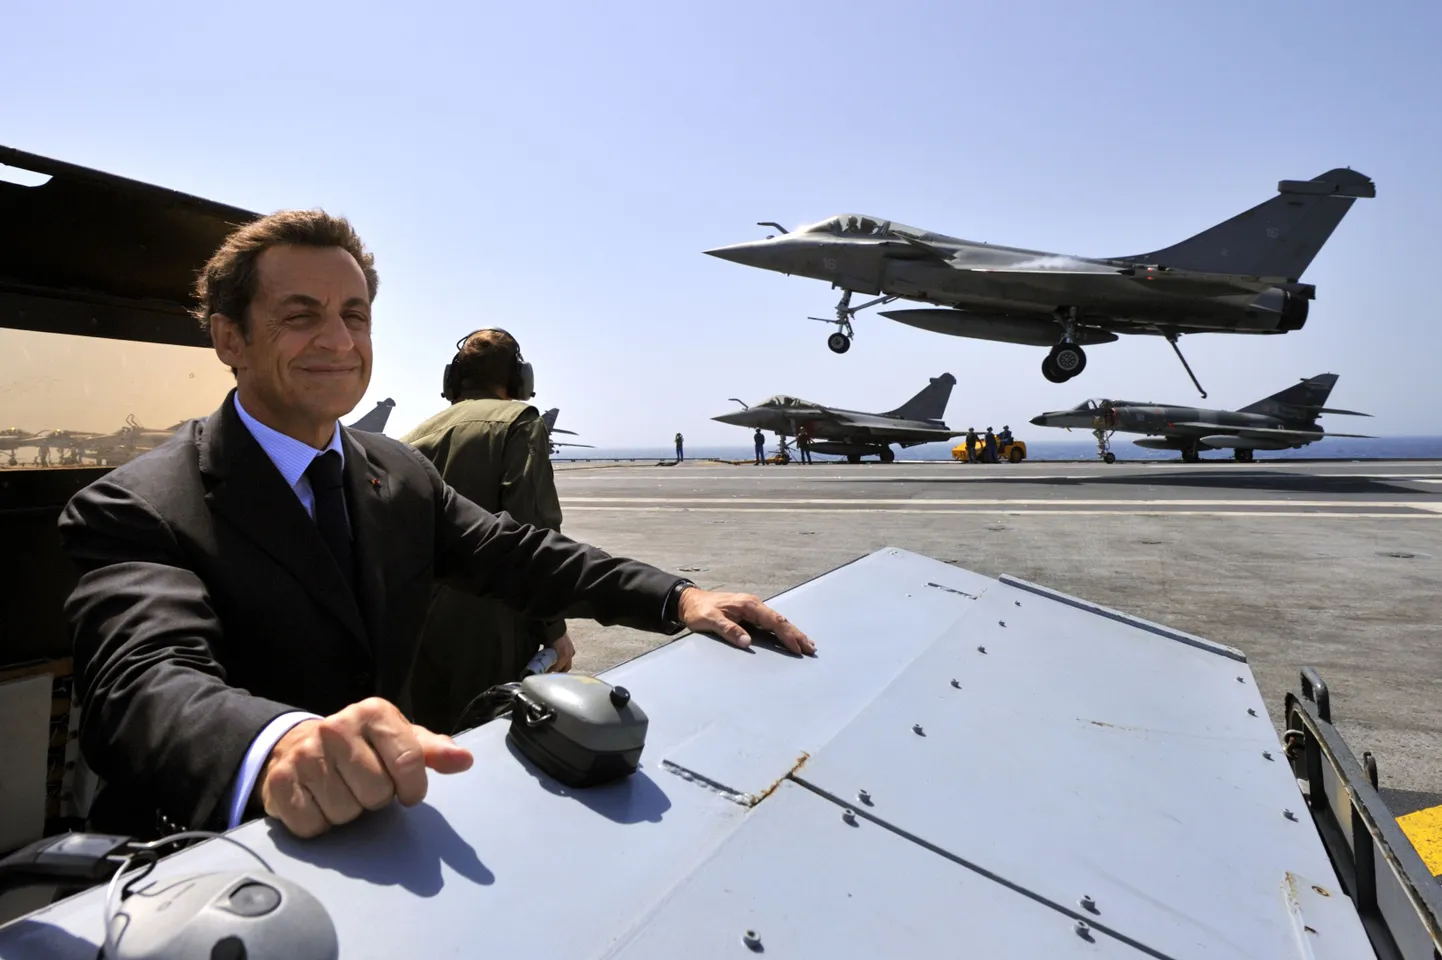 Президент Франции Николя Саркози на авианосце "Шарль де Голль", на которoм базируются истребители Rafale. Фото сделано летом 2010 года.